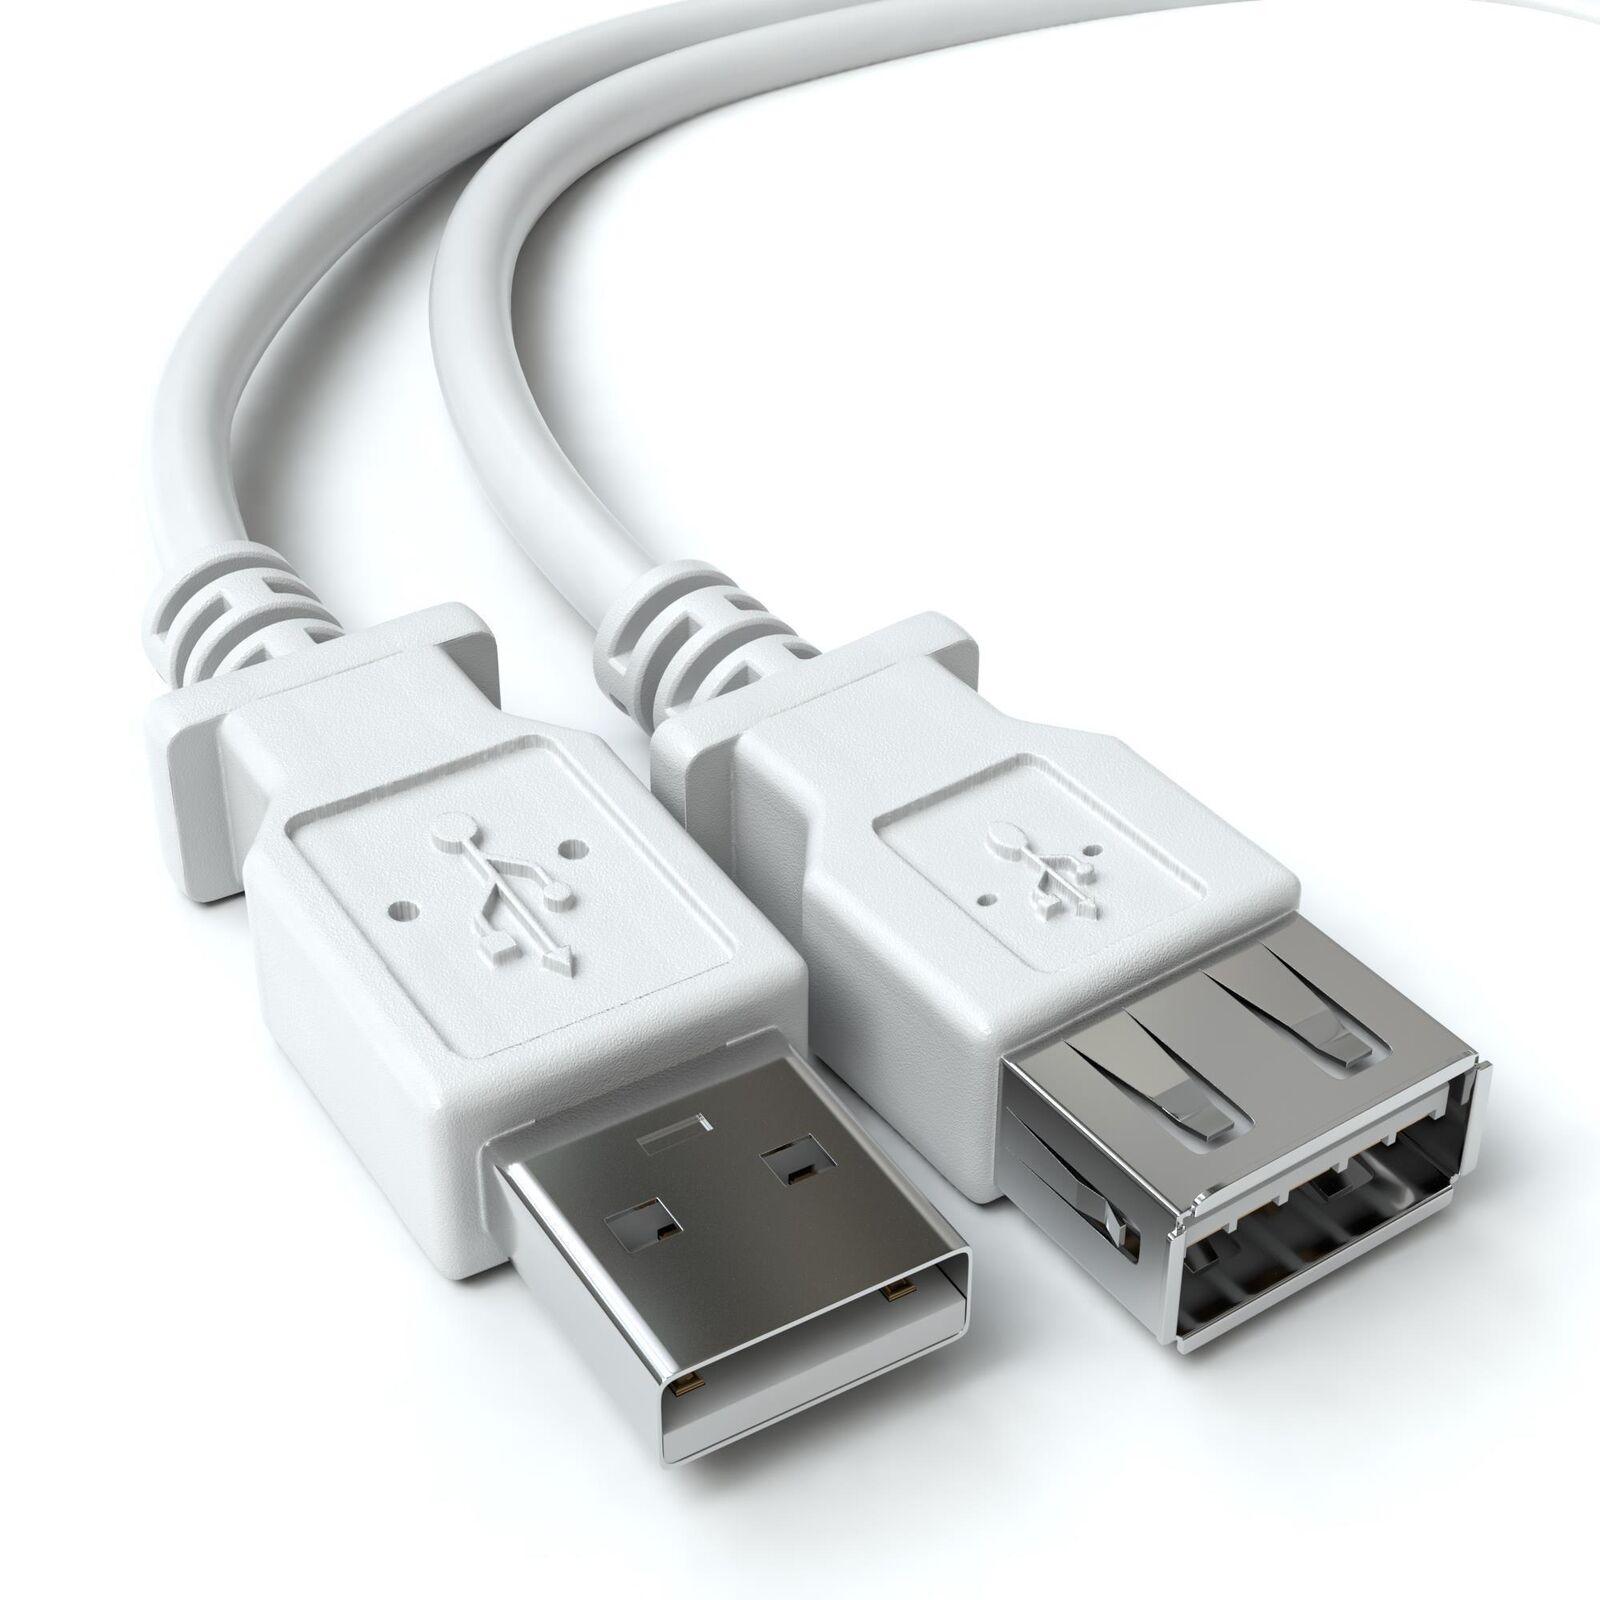 Cable alargador extensor USB 2.0 3 M Beige